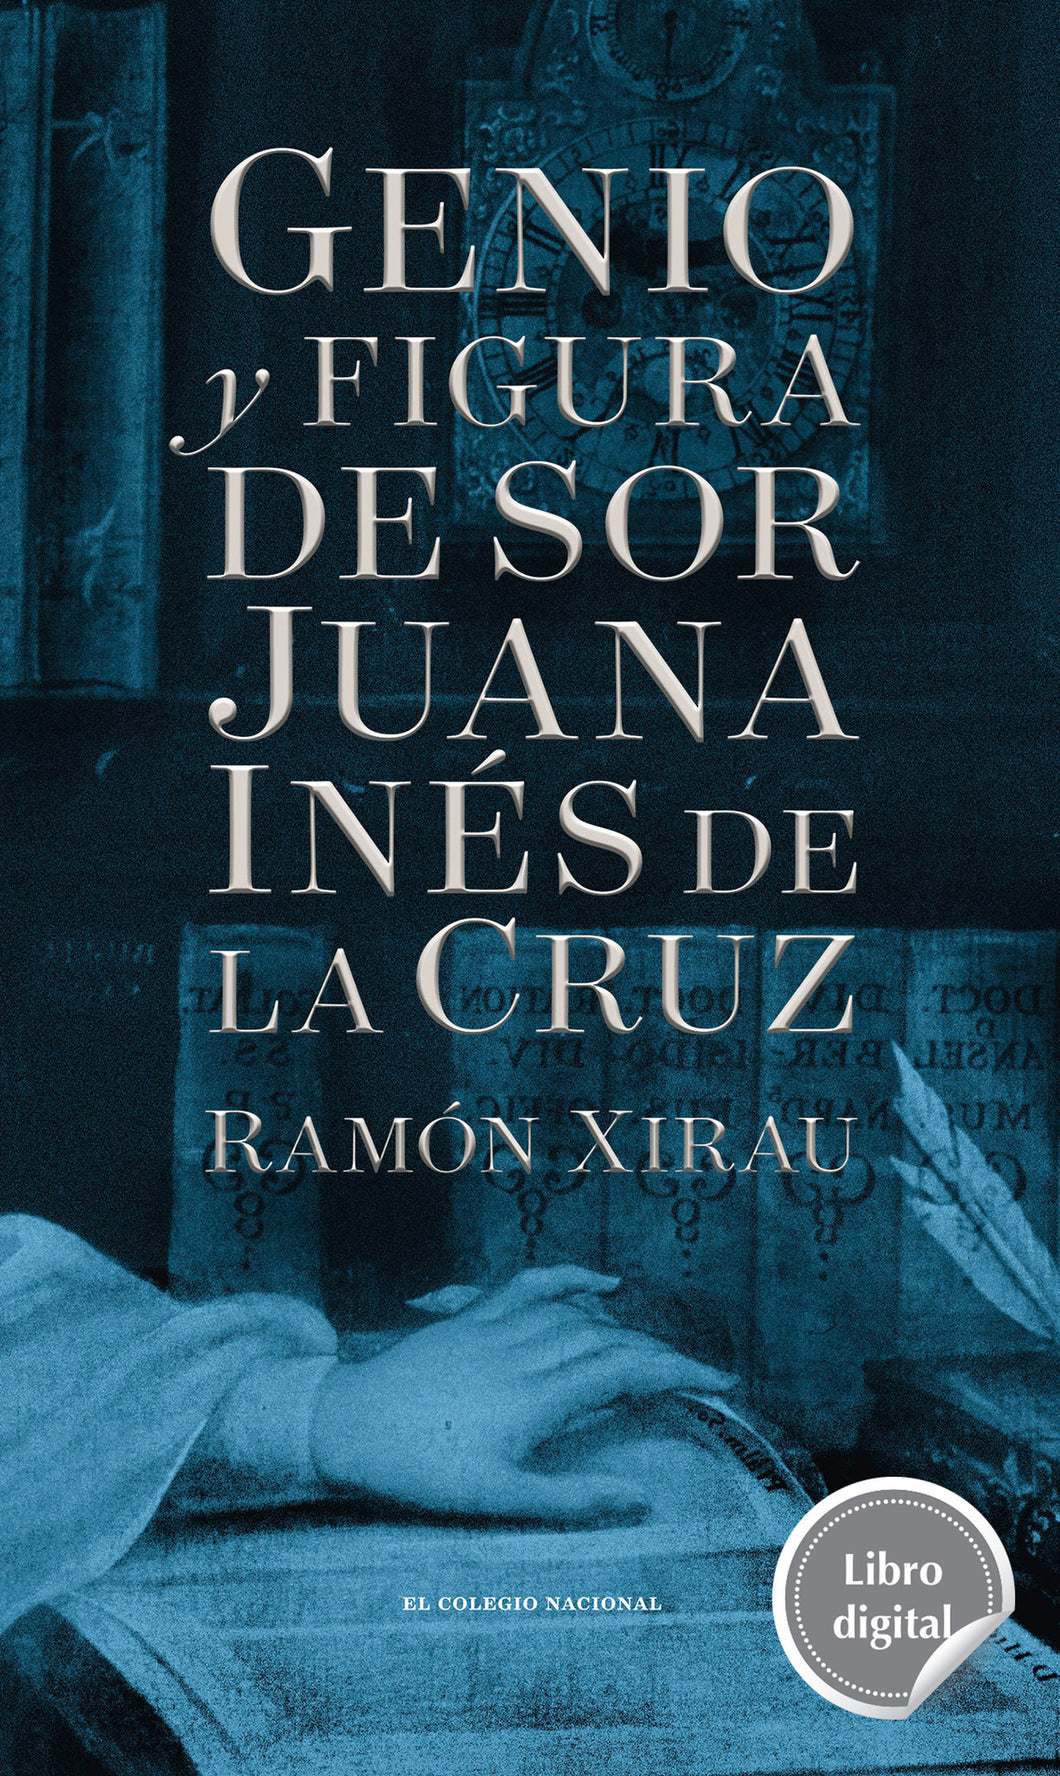 Genio y figura de sor Juana Inés de la Cruz de Ramón Xirau, libro digital de El Colegio Nacional, Libros Colnal